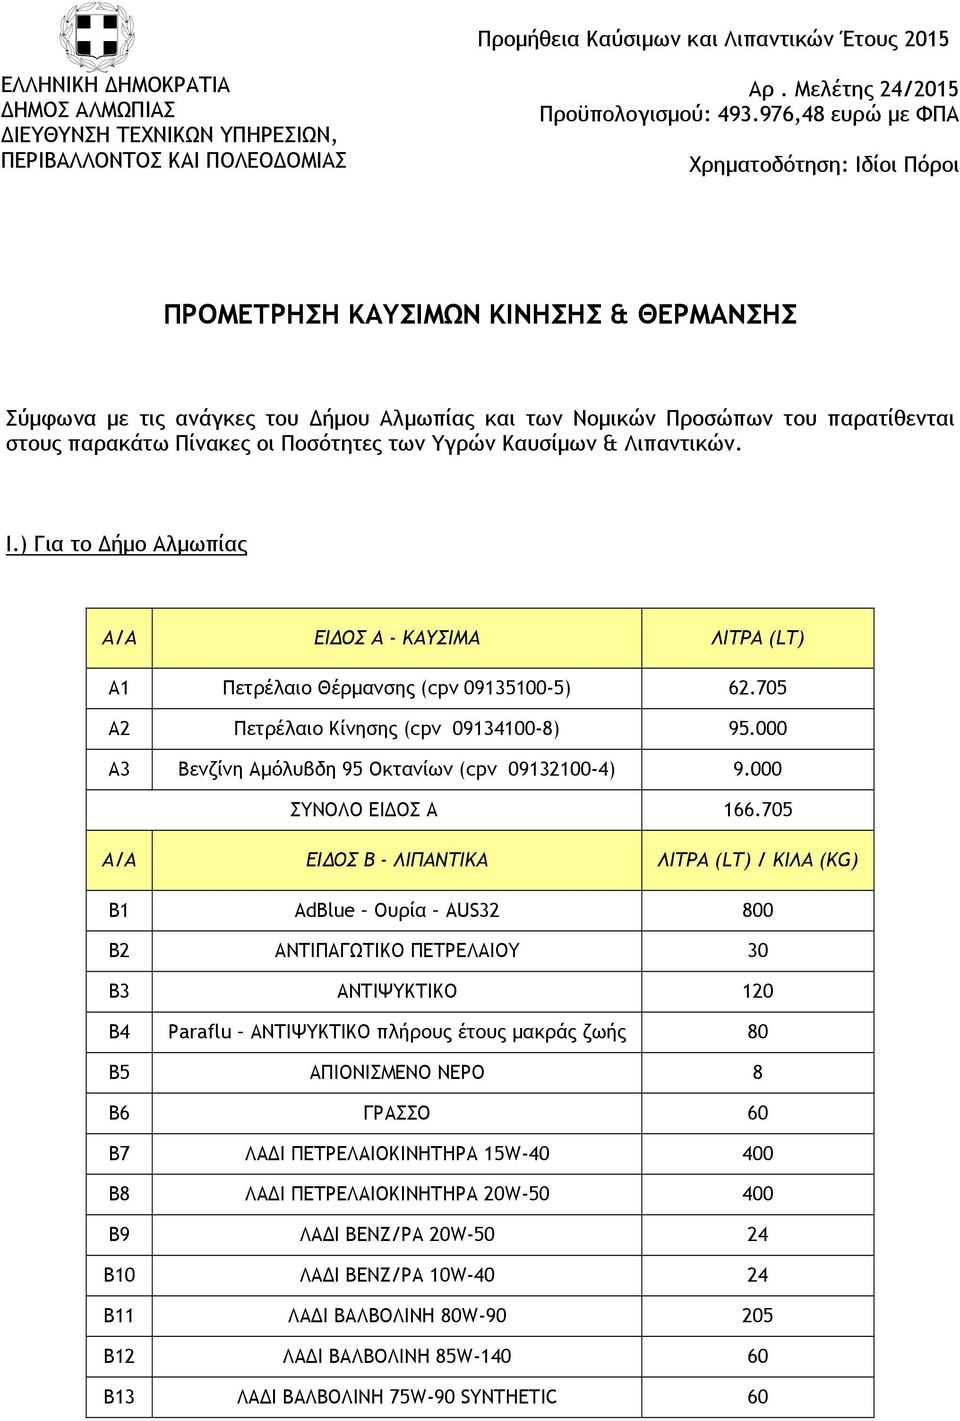 Ποσότητες των Υγρών Καυσίμων & Λιπαντικών. I.) Για το Δήμο Αλμωπίας Α1 Πετρέλαιο Θέρμανσης (cpv 09135100-5) 62.705 Α2 Πετρέλαιο Κίνησης (cpv 09134100-8) 95.